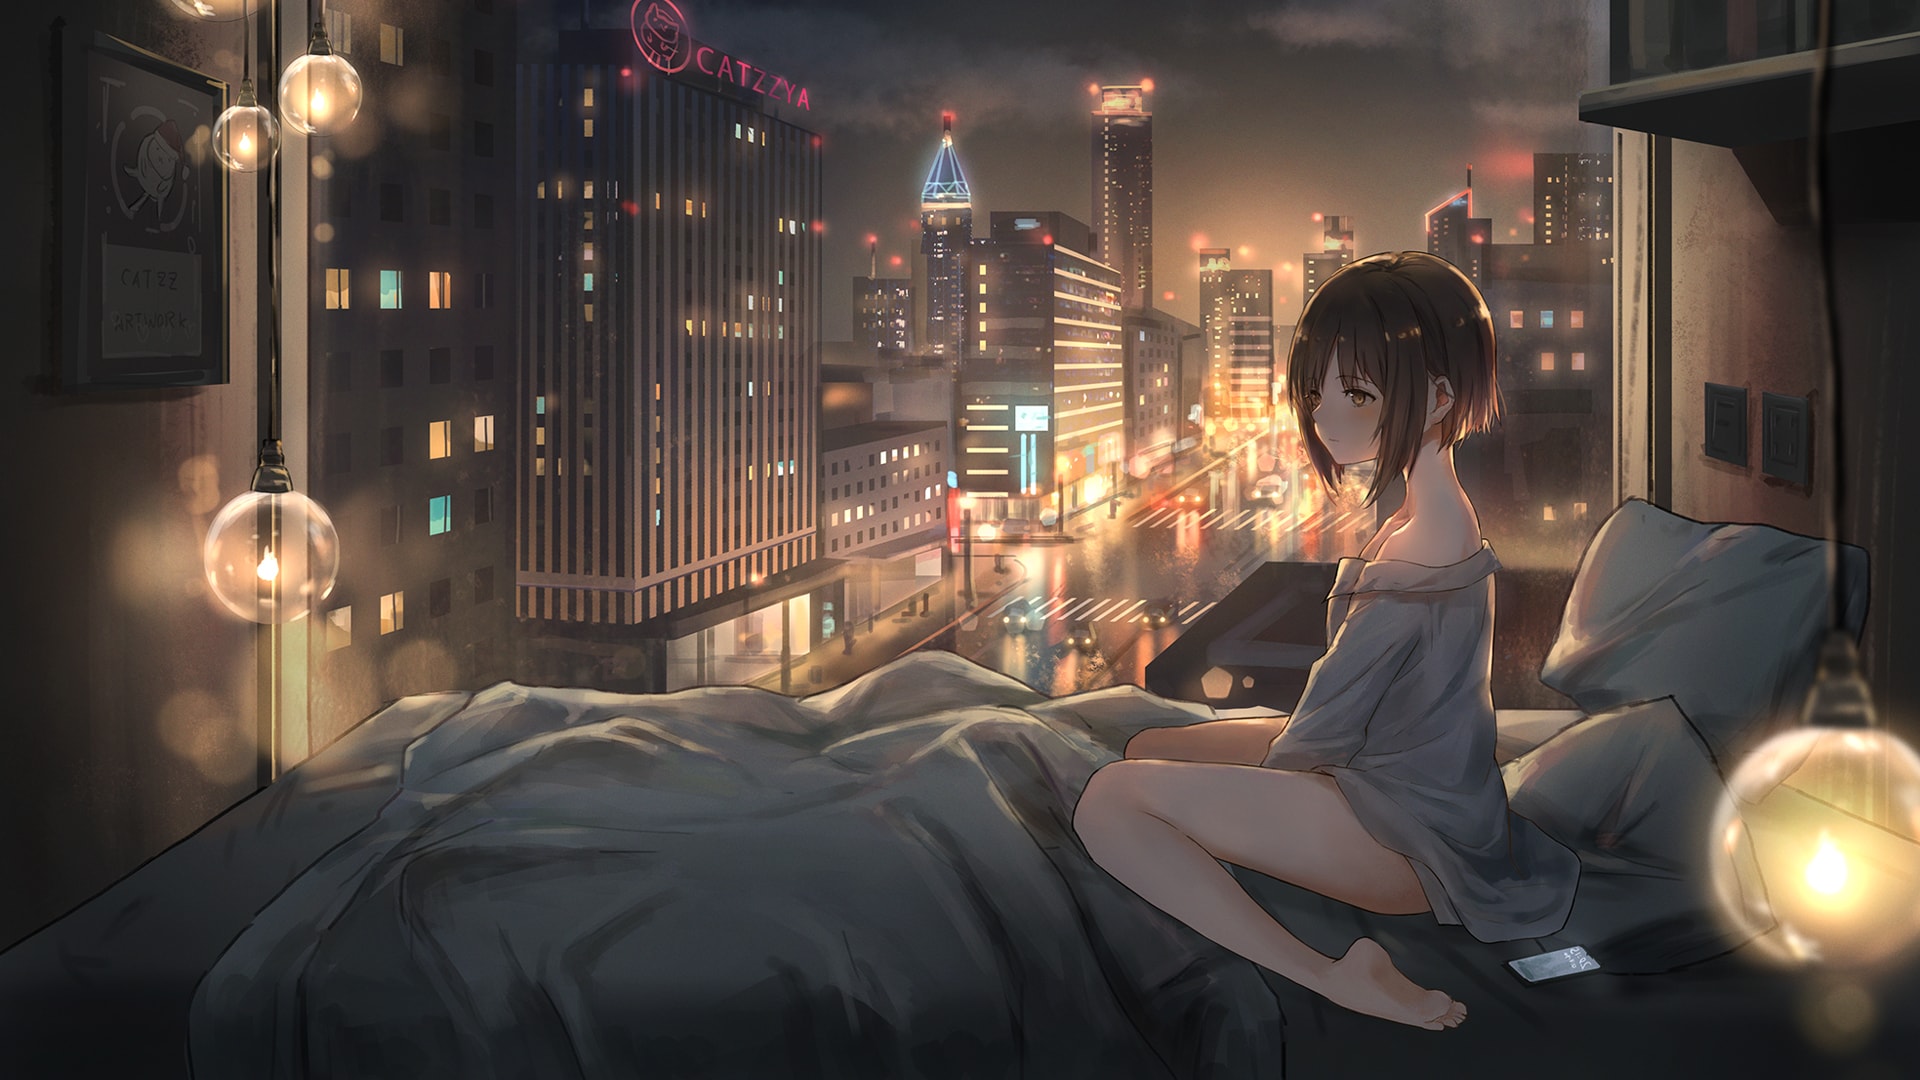 夜幕降临都市女孩子晚上起床动漫风景